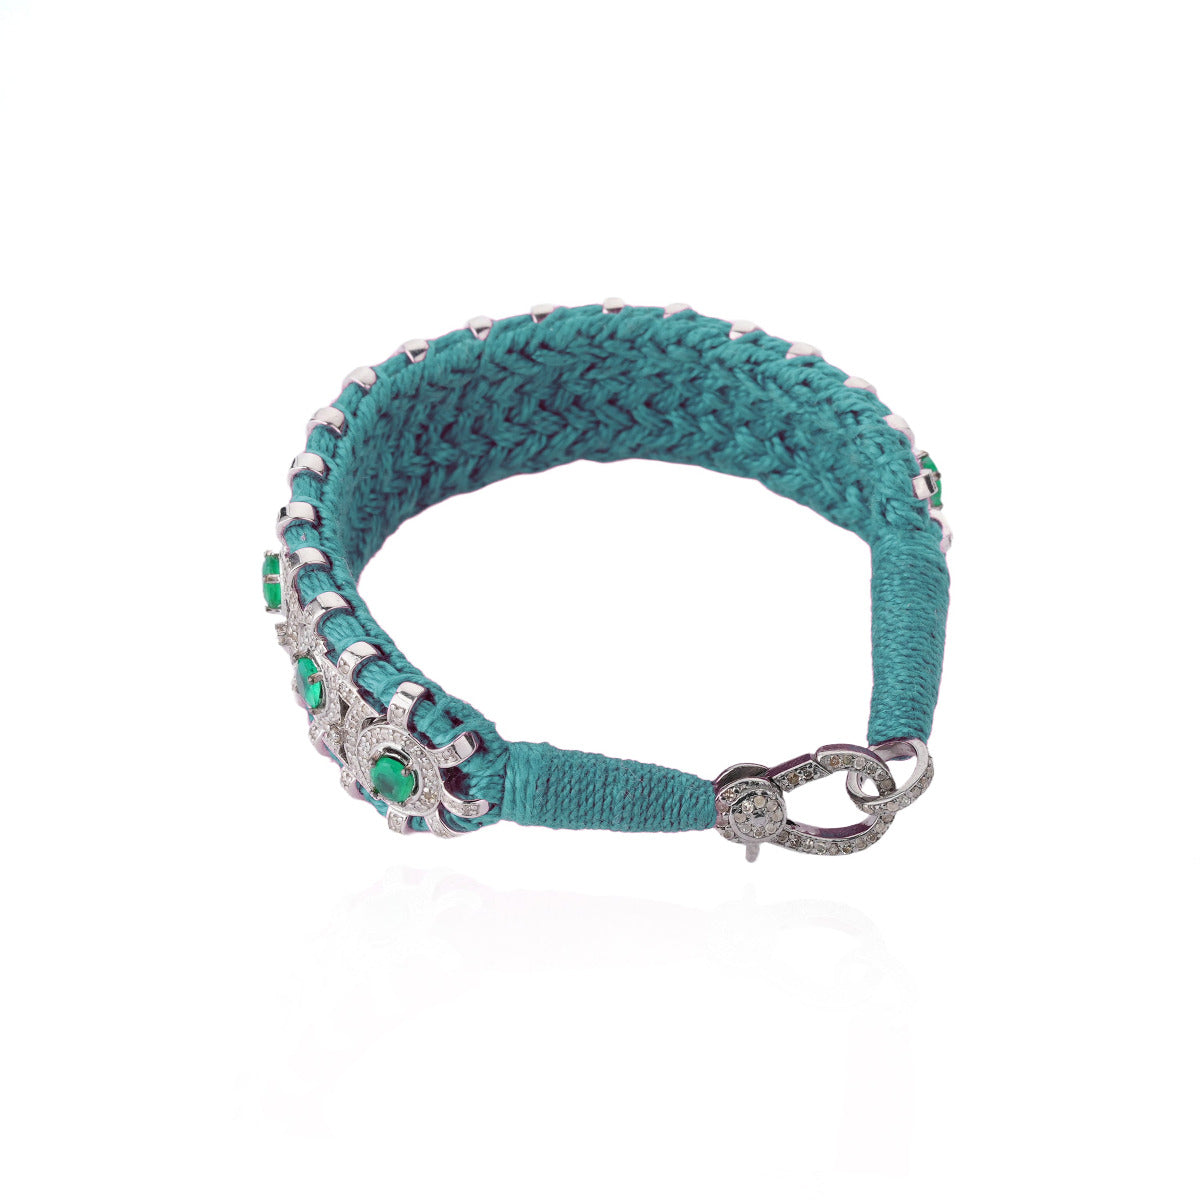 Bracelet Sao Paulo turquoise